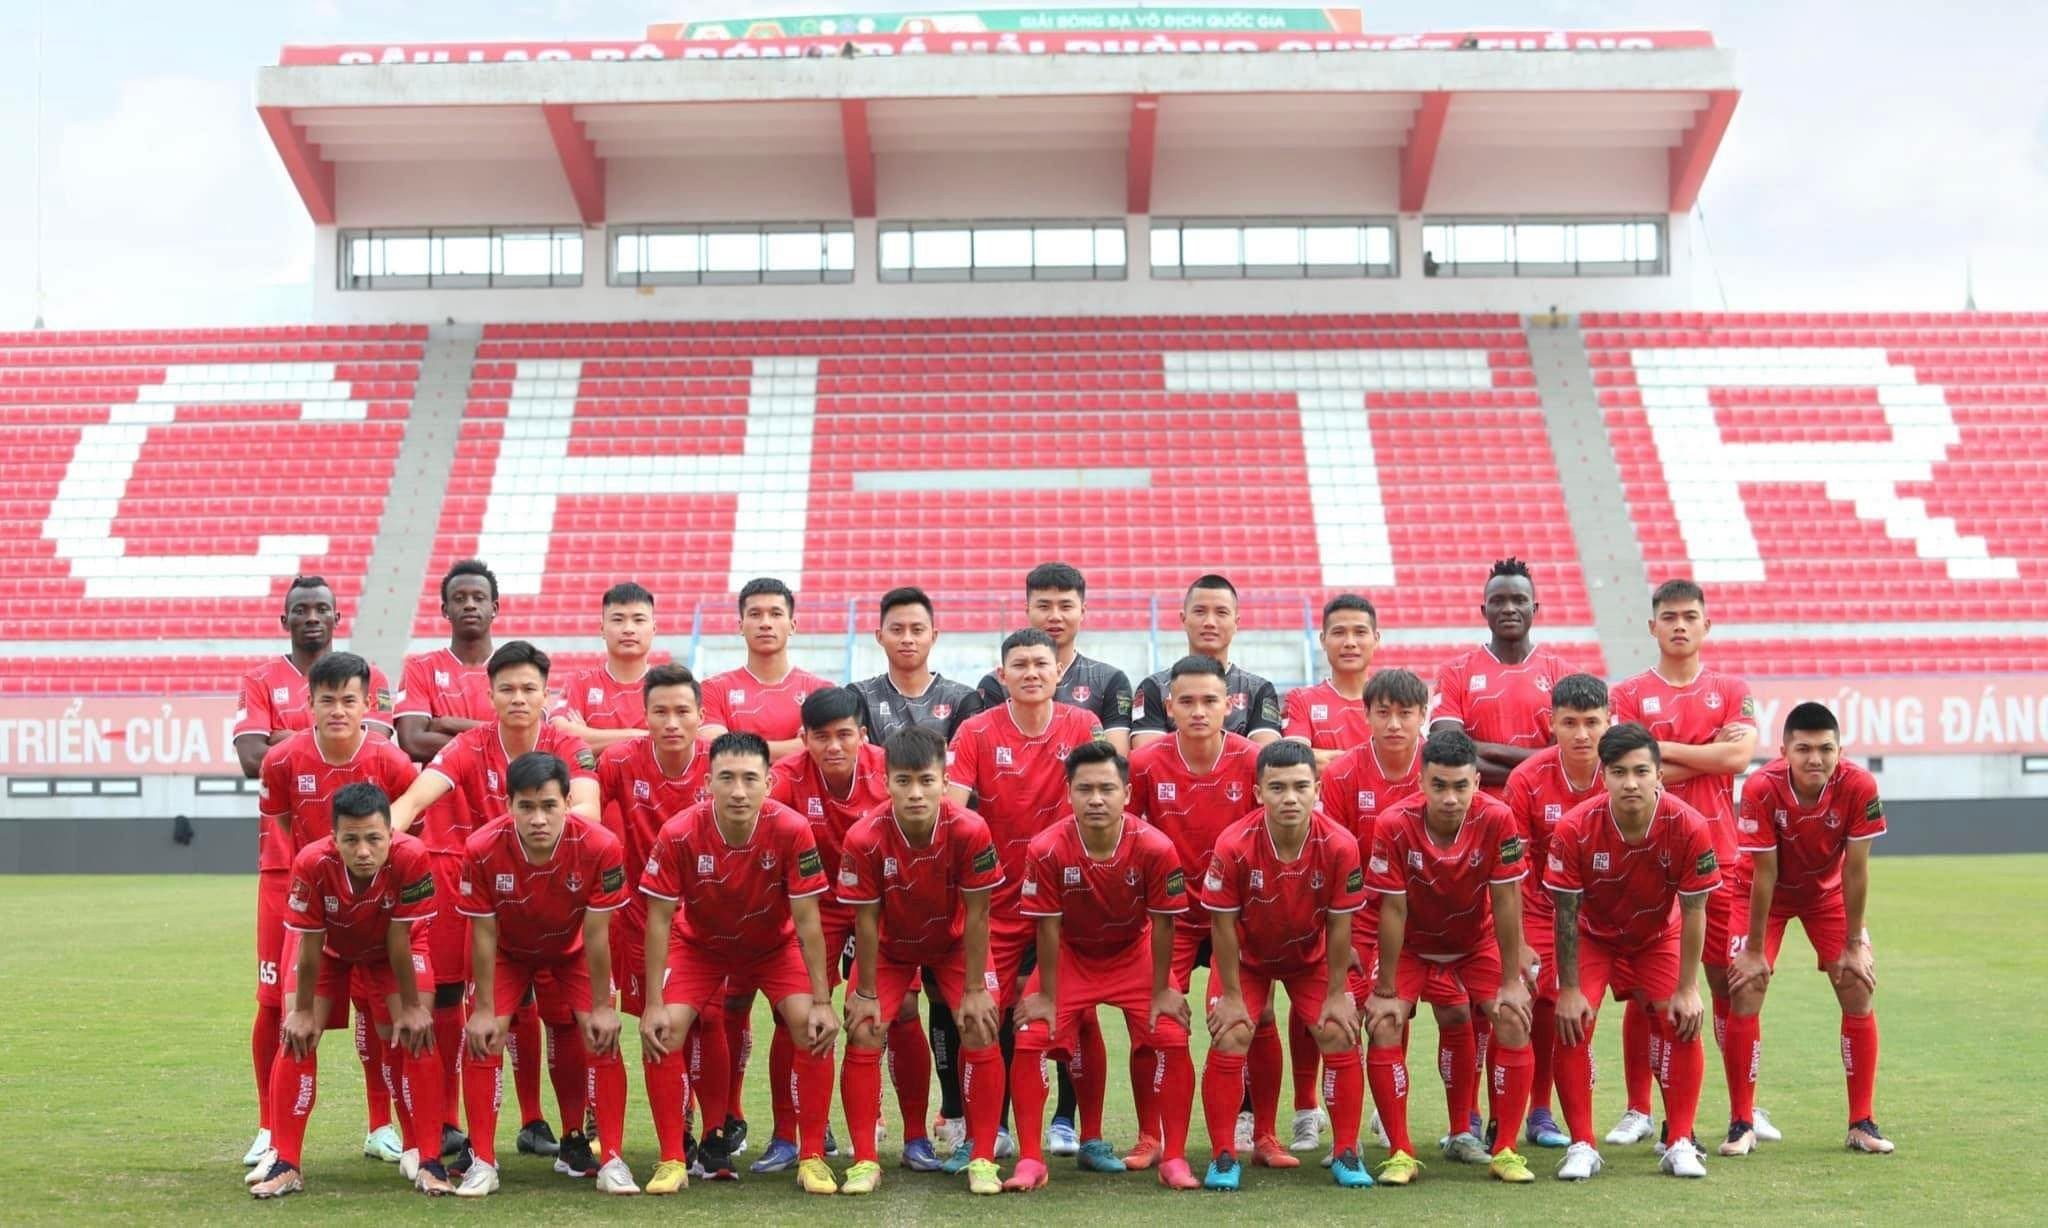 CLB Hải Phòng trở thành đội bóng V-League đầu tiên hợp tác với Thể thao Điện tử